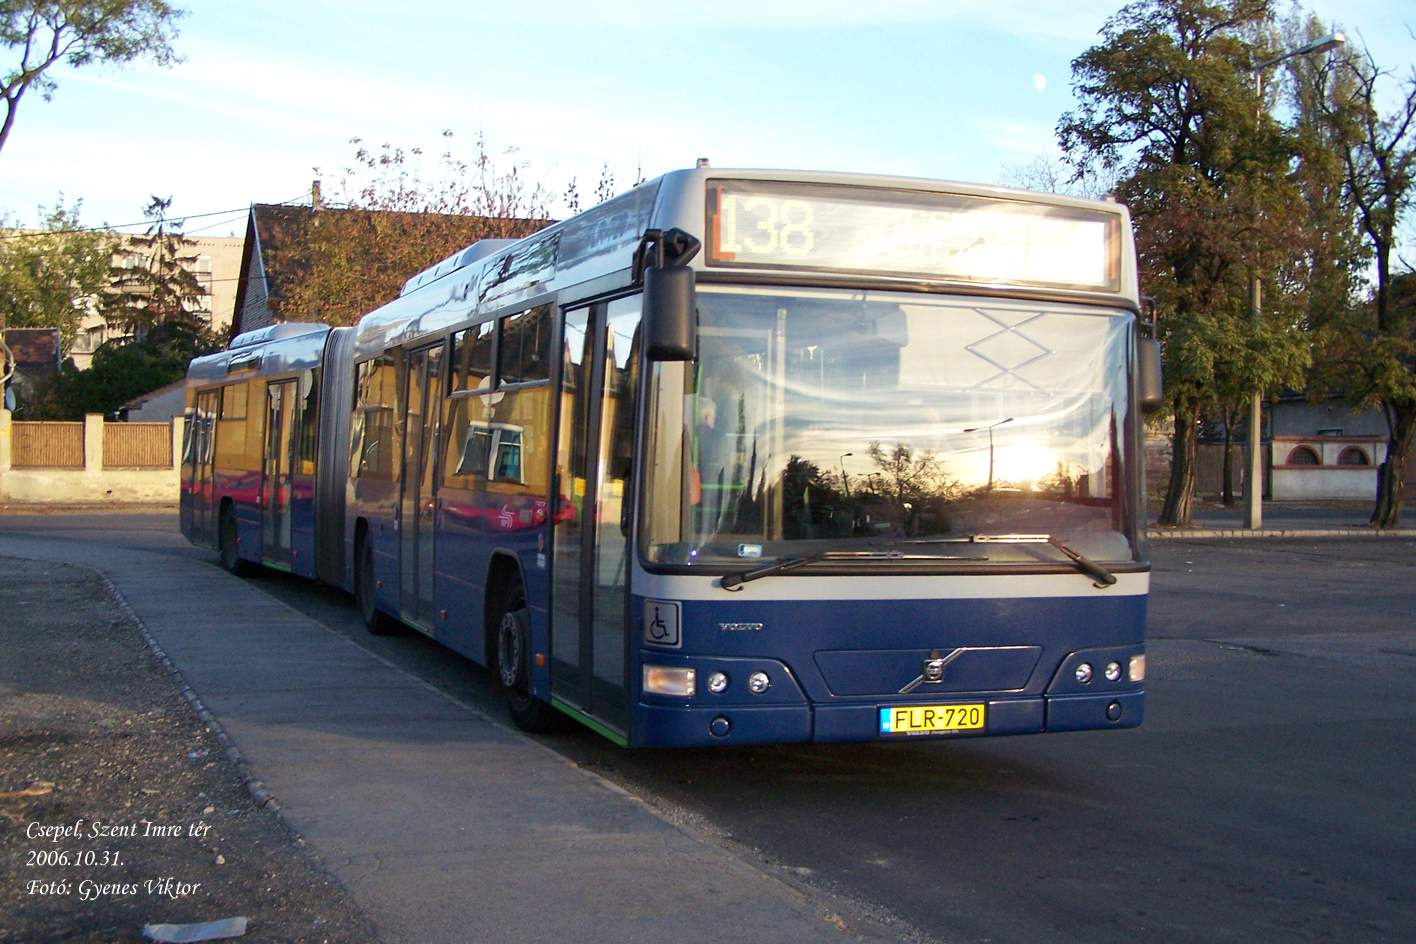 Busz FLR-720